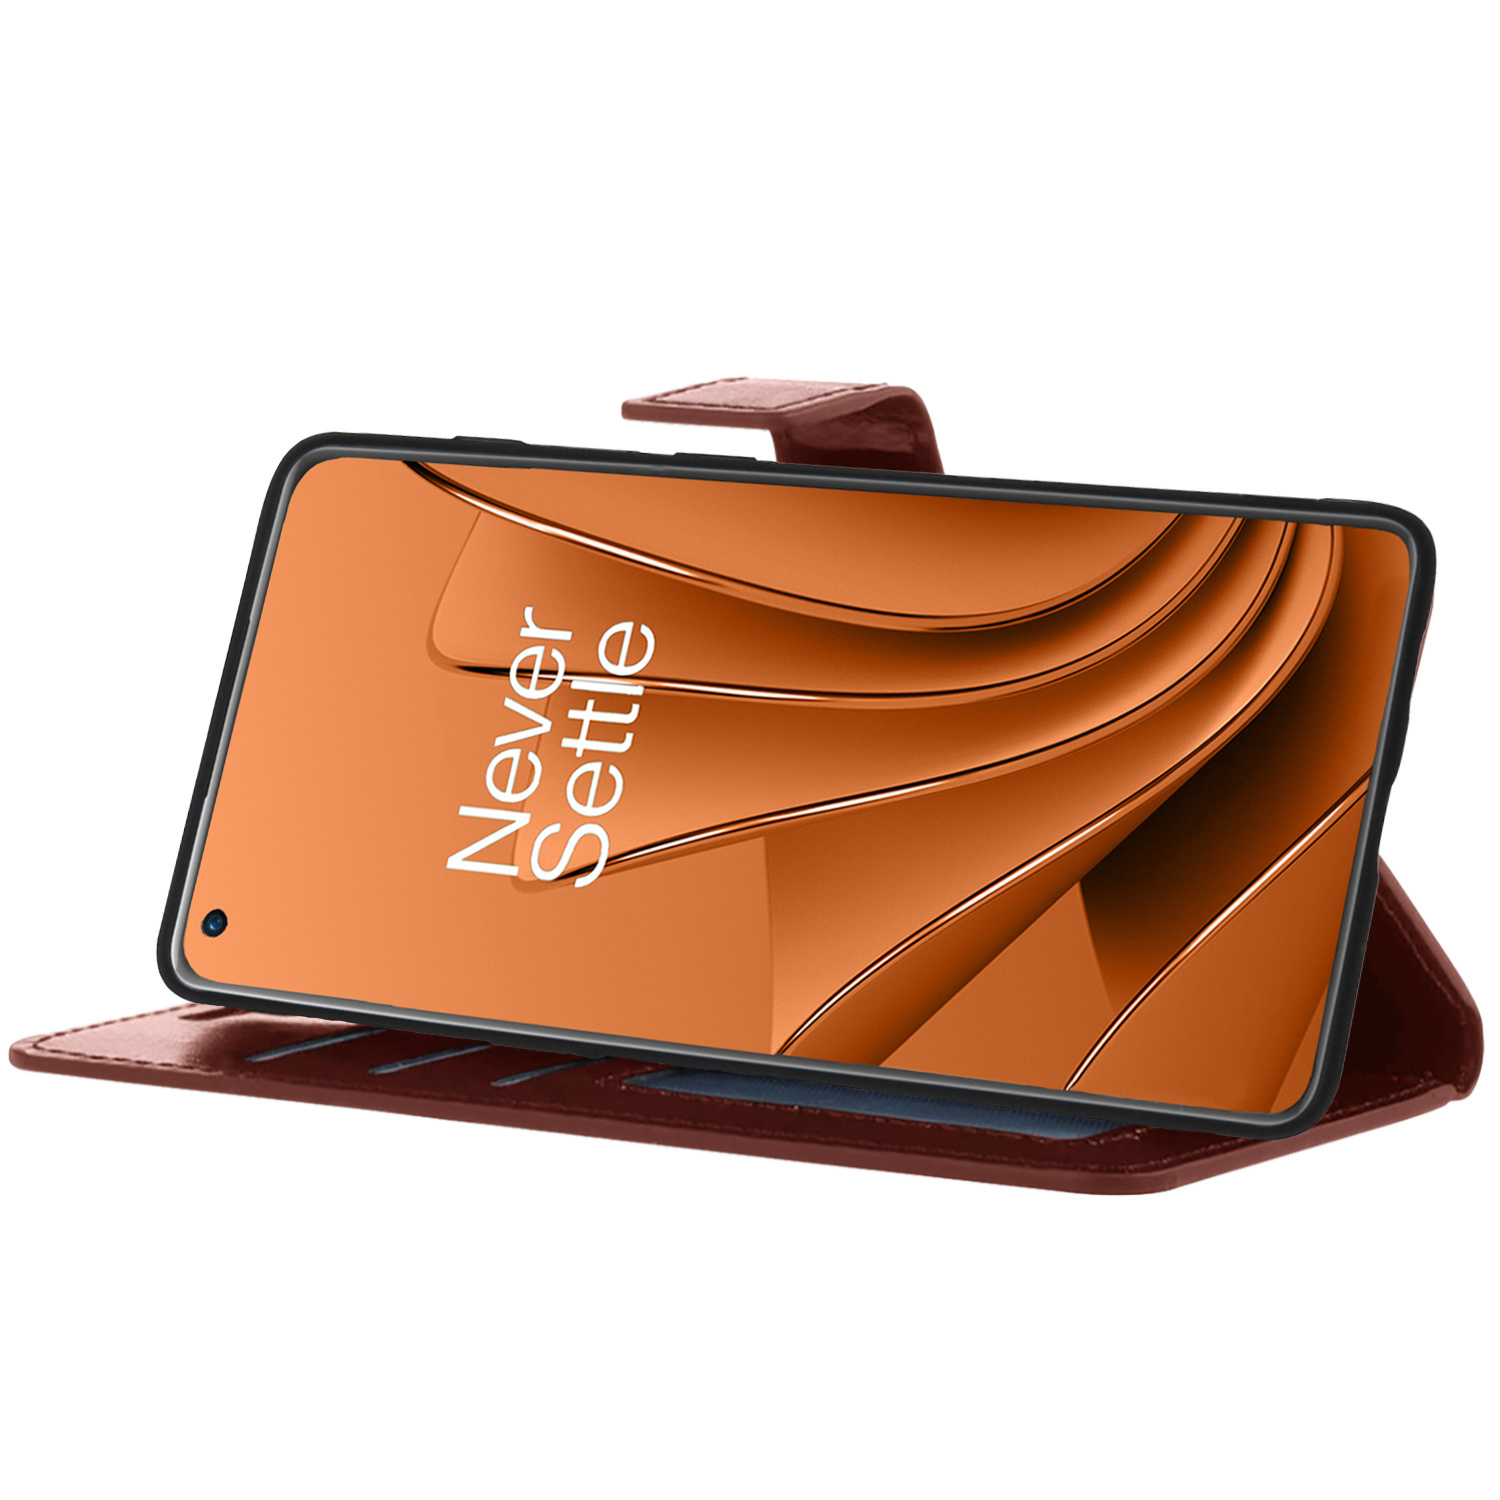 OnePlus 10 Pro Hoesje Bookcase Met 2x Screenprotector - OnePlus 10 Pro Screenprotector 2x - OnePlus 10 Pro Book Case Met 2x Screenprotector Bruin